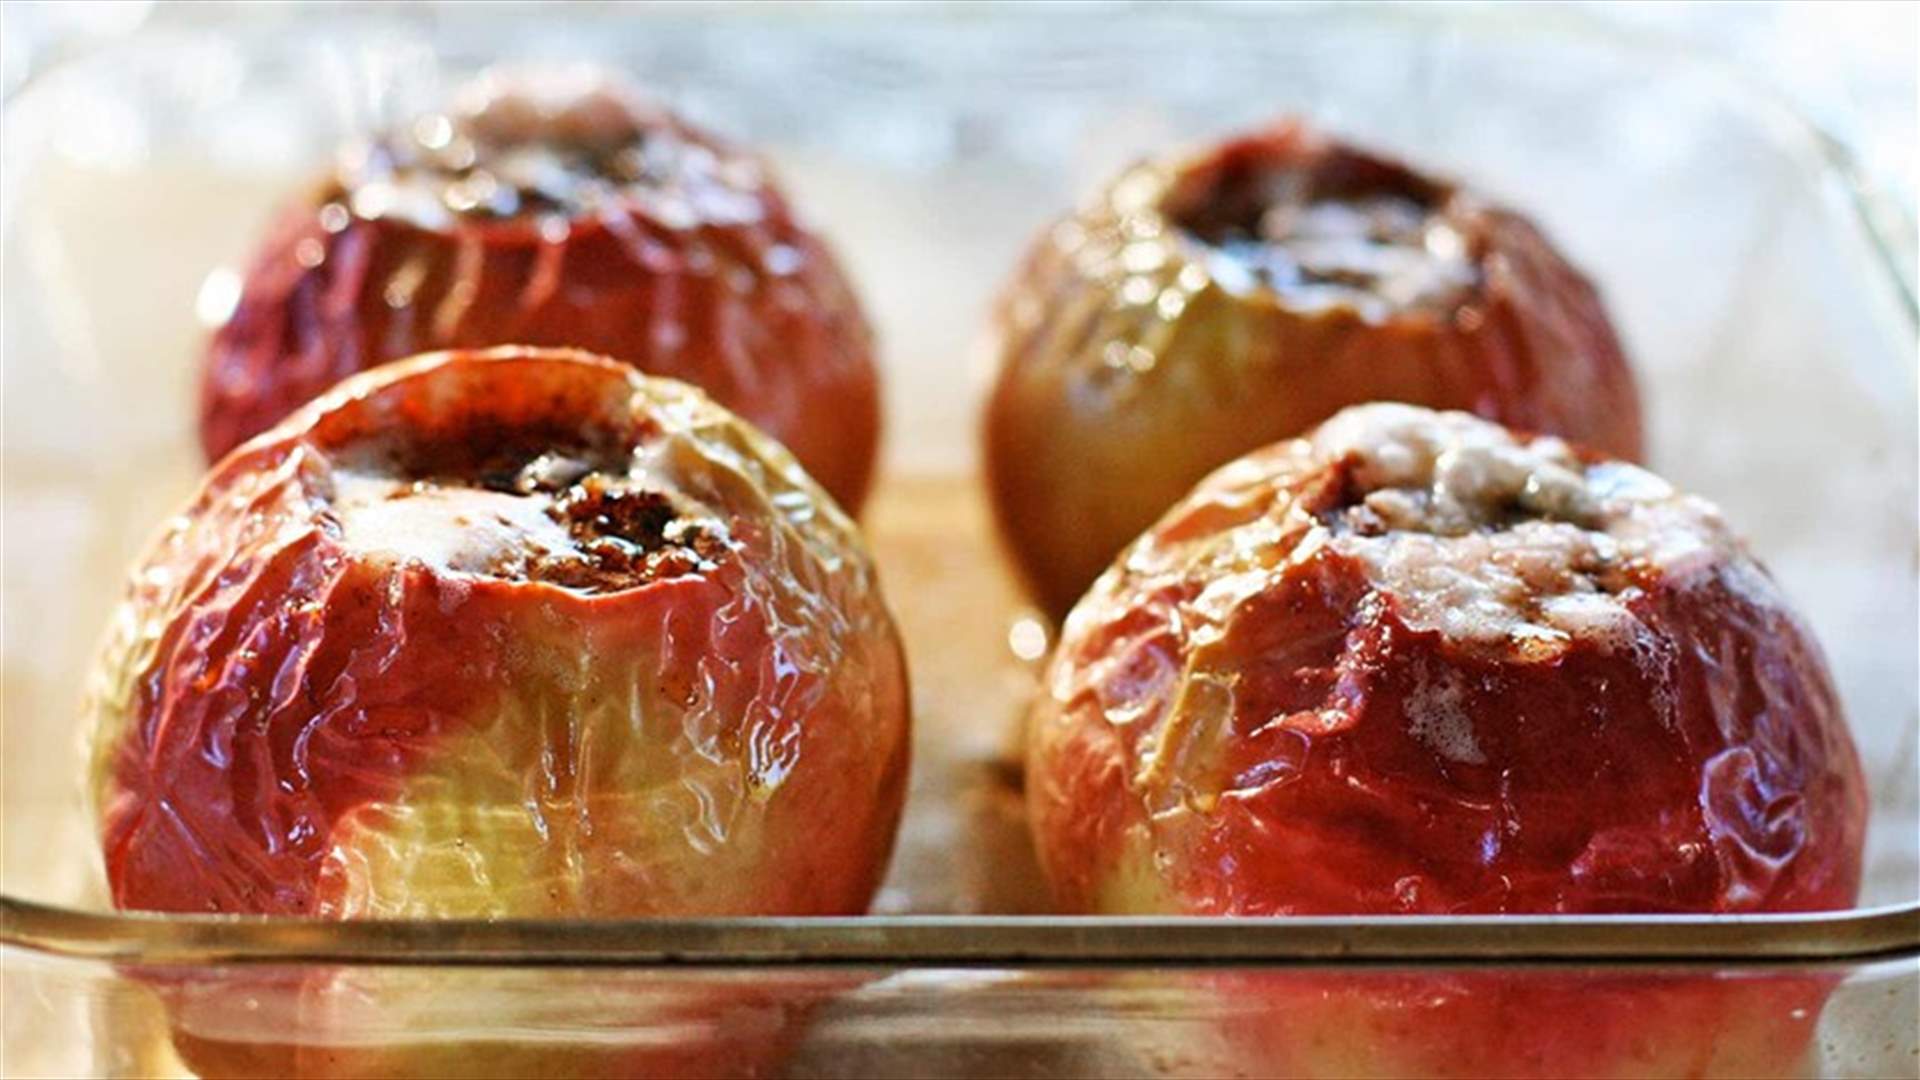 التفاح المخبوز مع القرفة والزبدة... وصفة مميّزة وسهلة